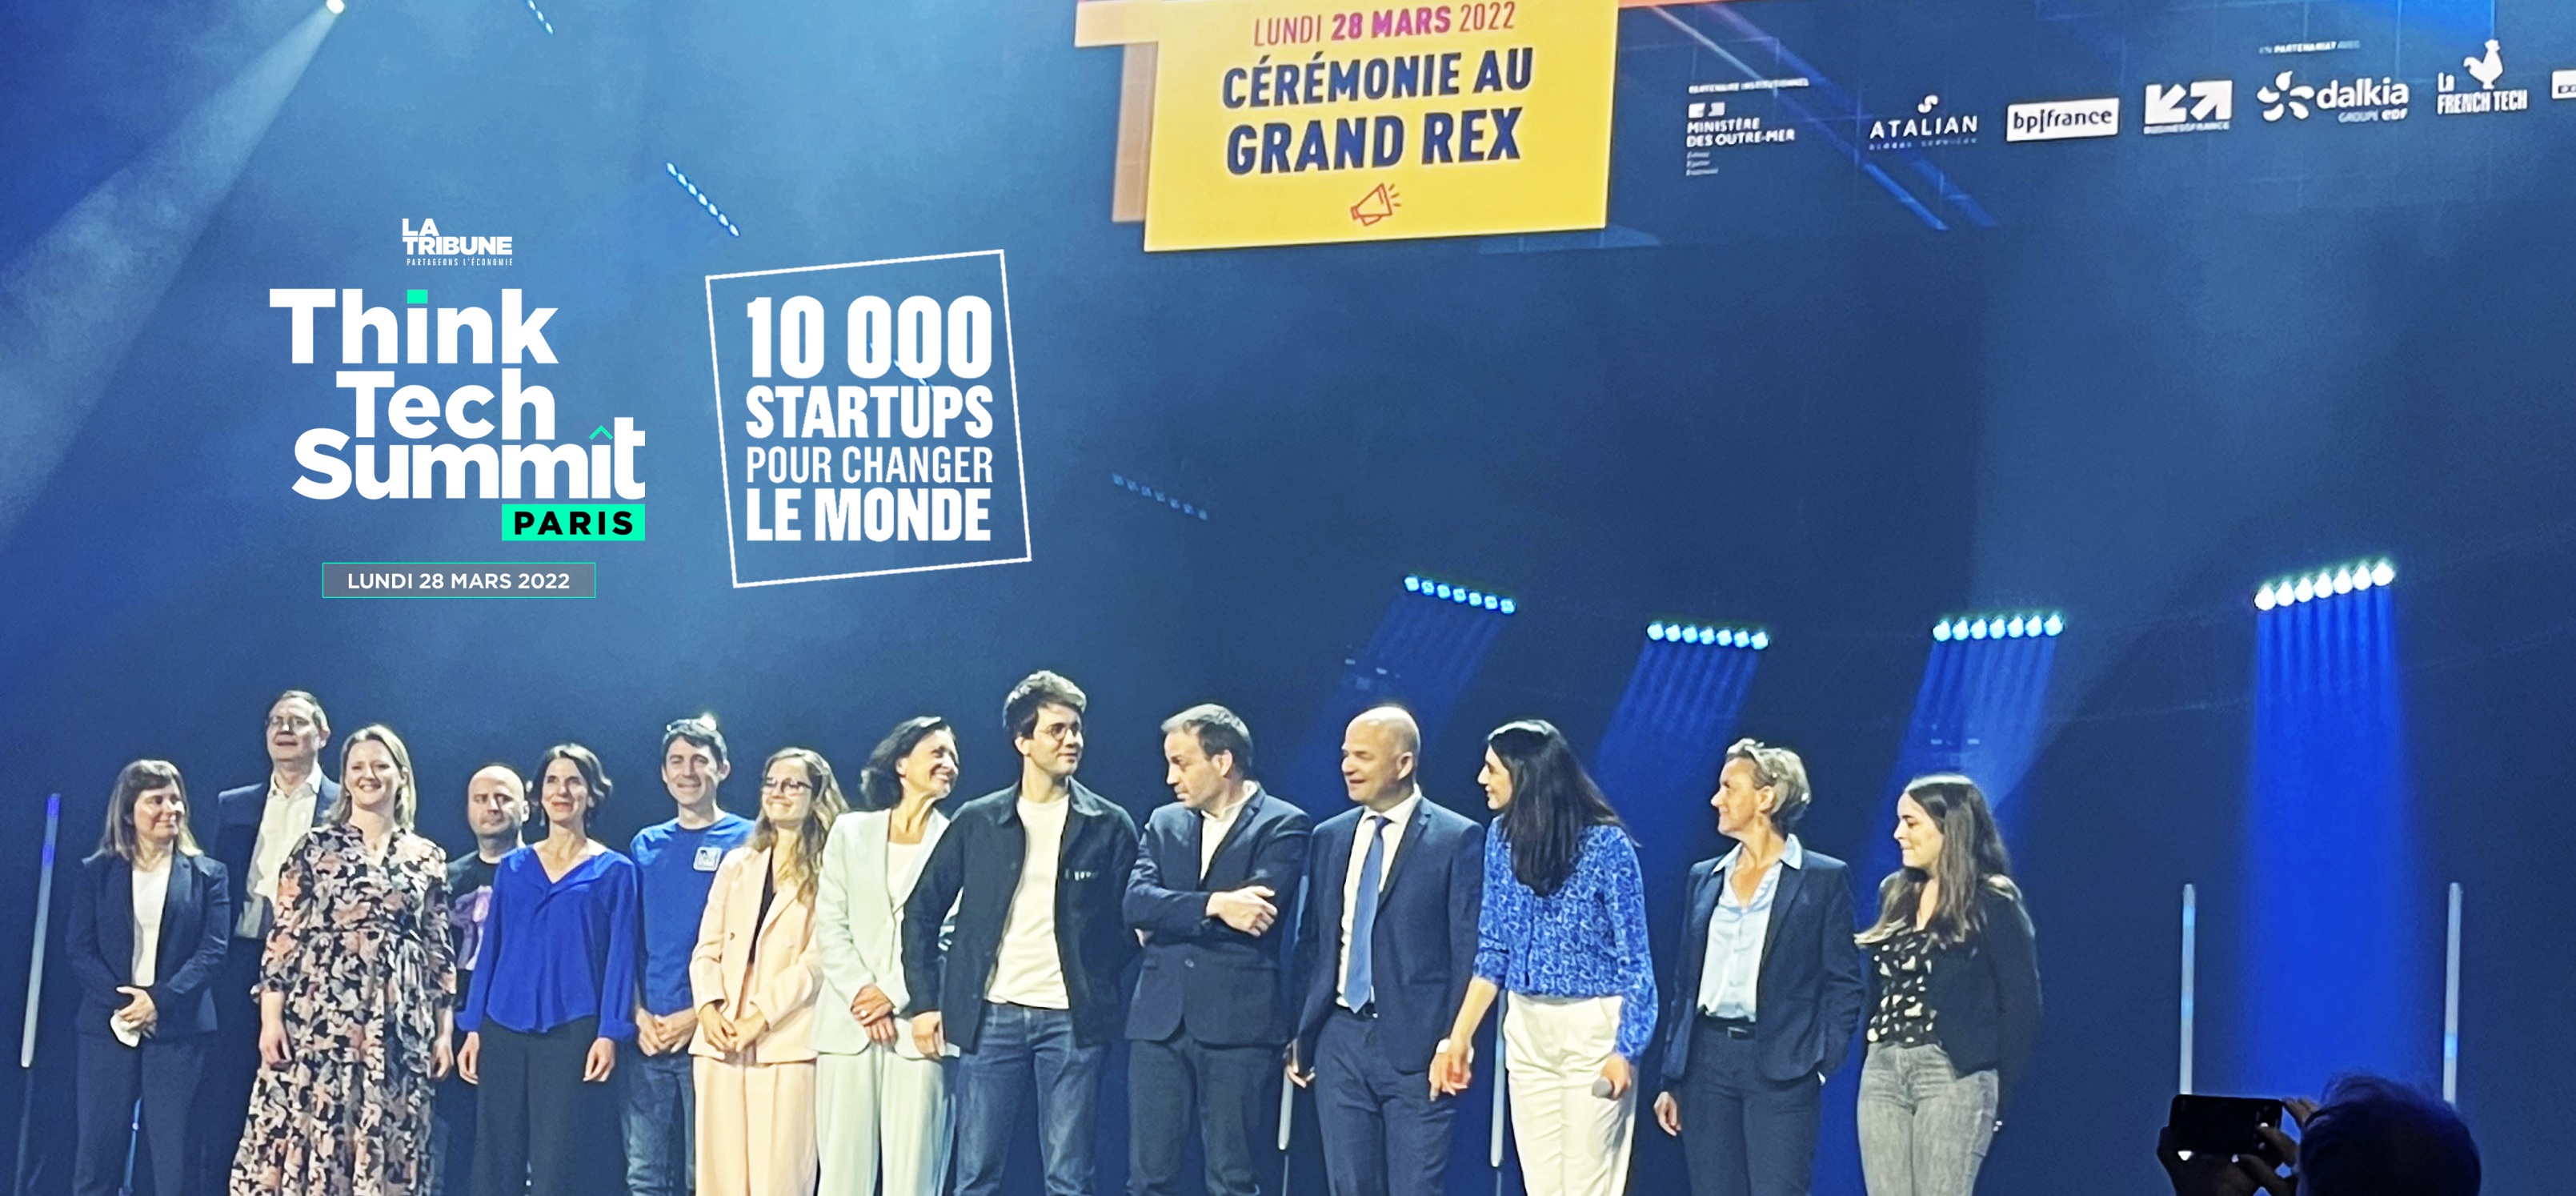 La remise des Trophées des 10 000 startups pour changer le monde